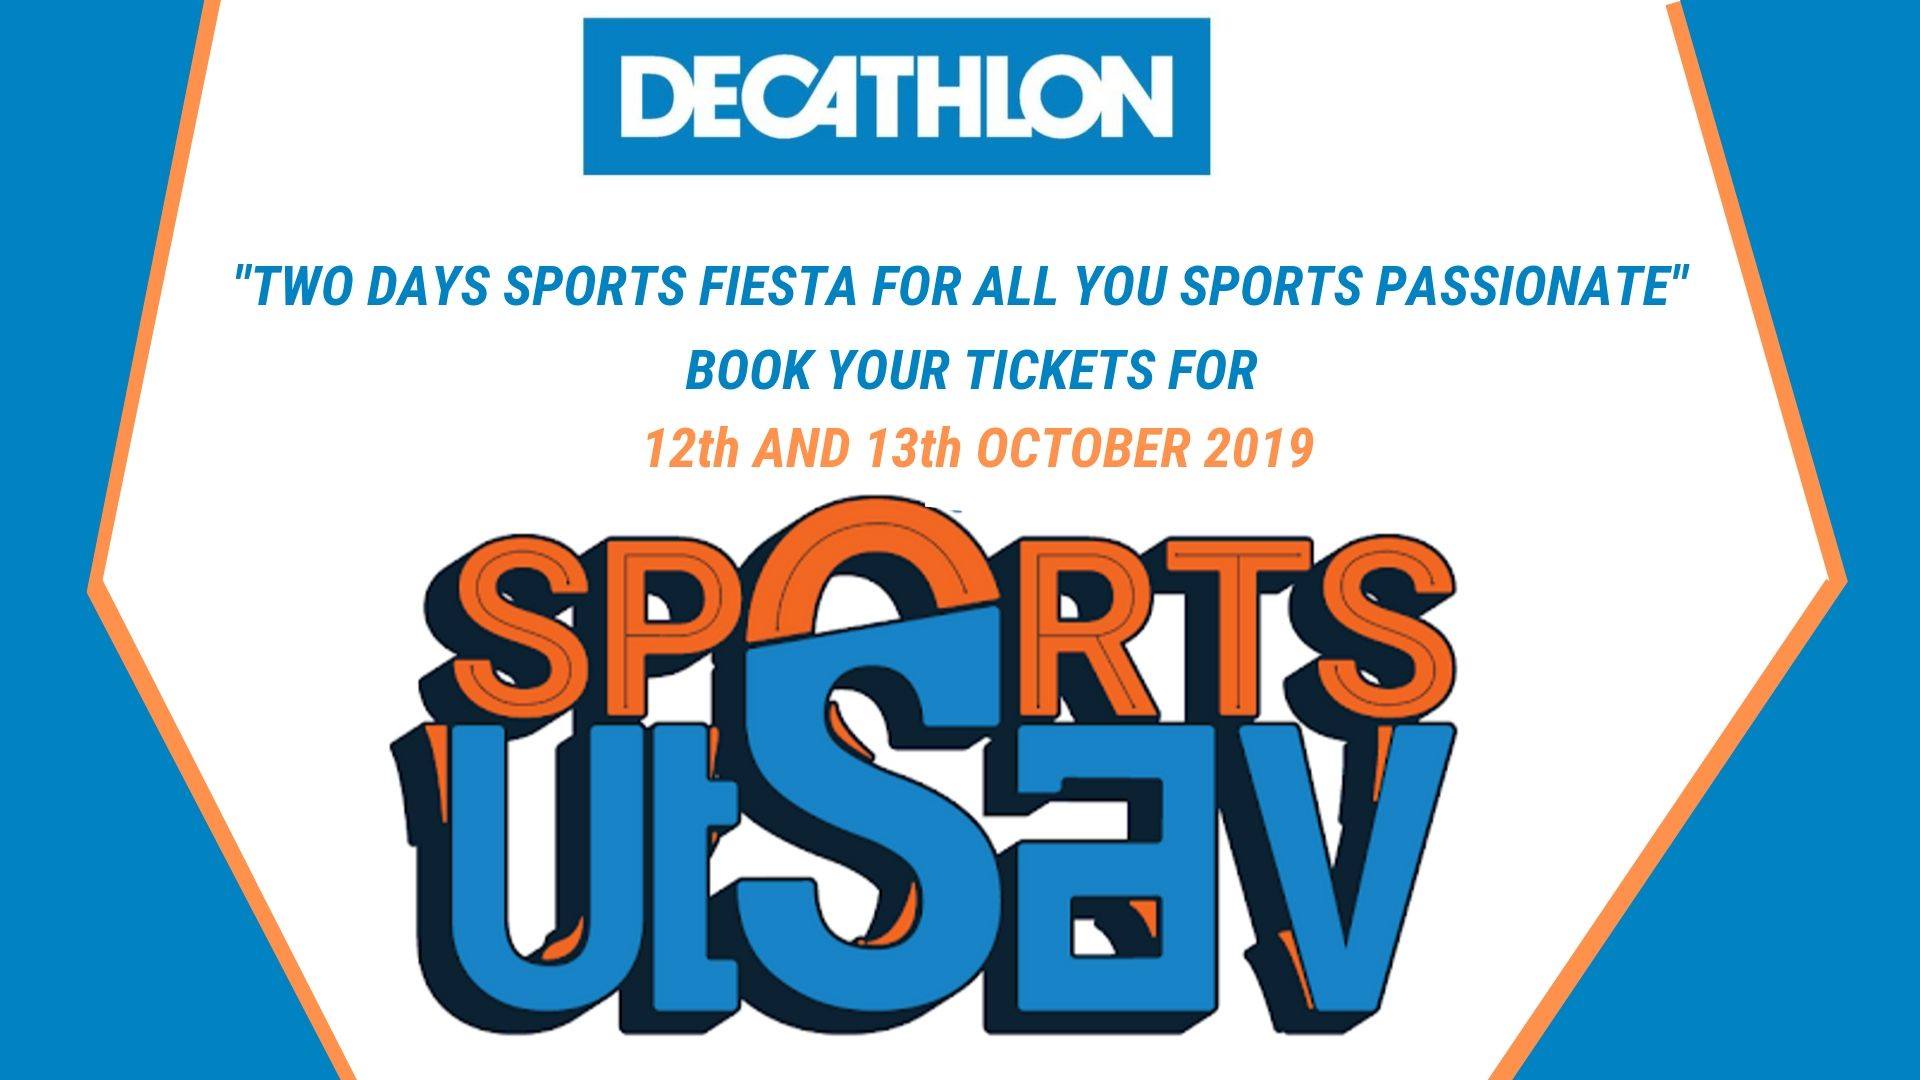 decathlon sports utsav 2019